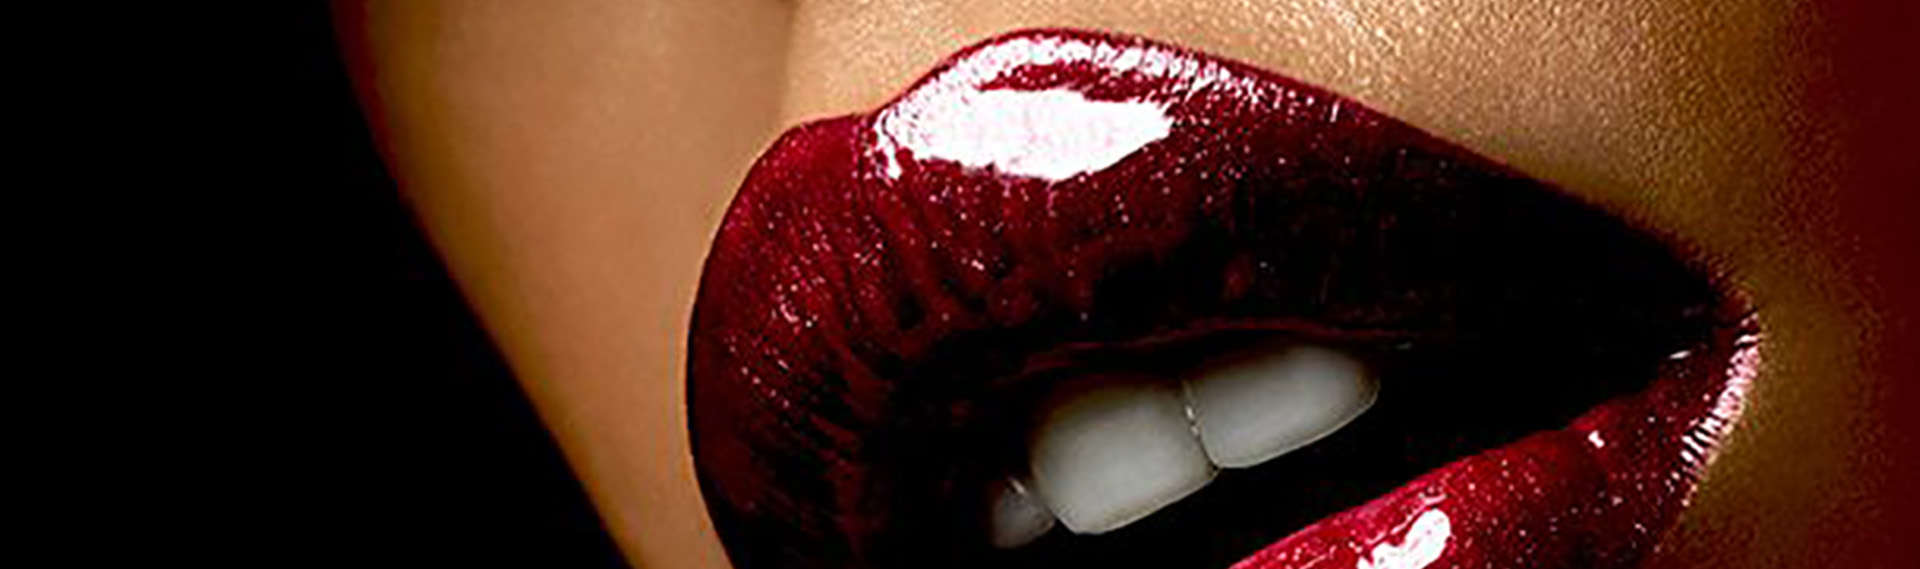 Gros plan sur une bouche laquée d'un rouge presque grappe de raisin